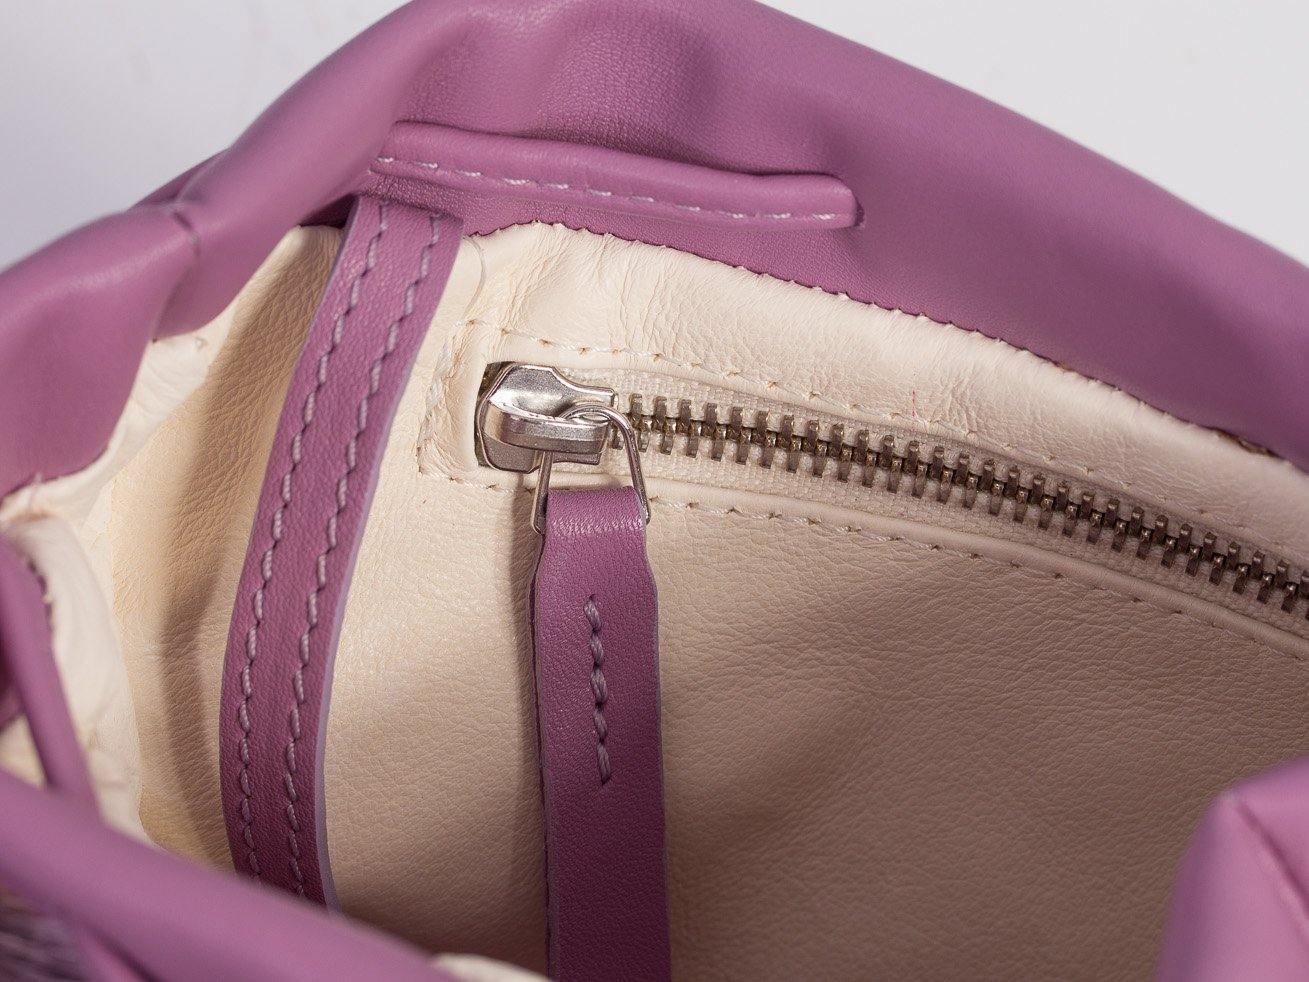 sherene melinda springbok hair-on-hide lavender leather pouch bag inside